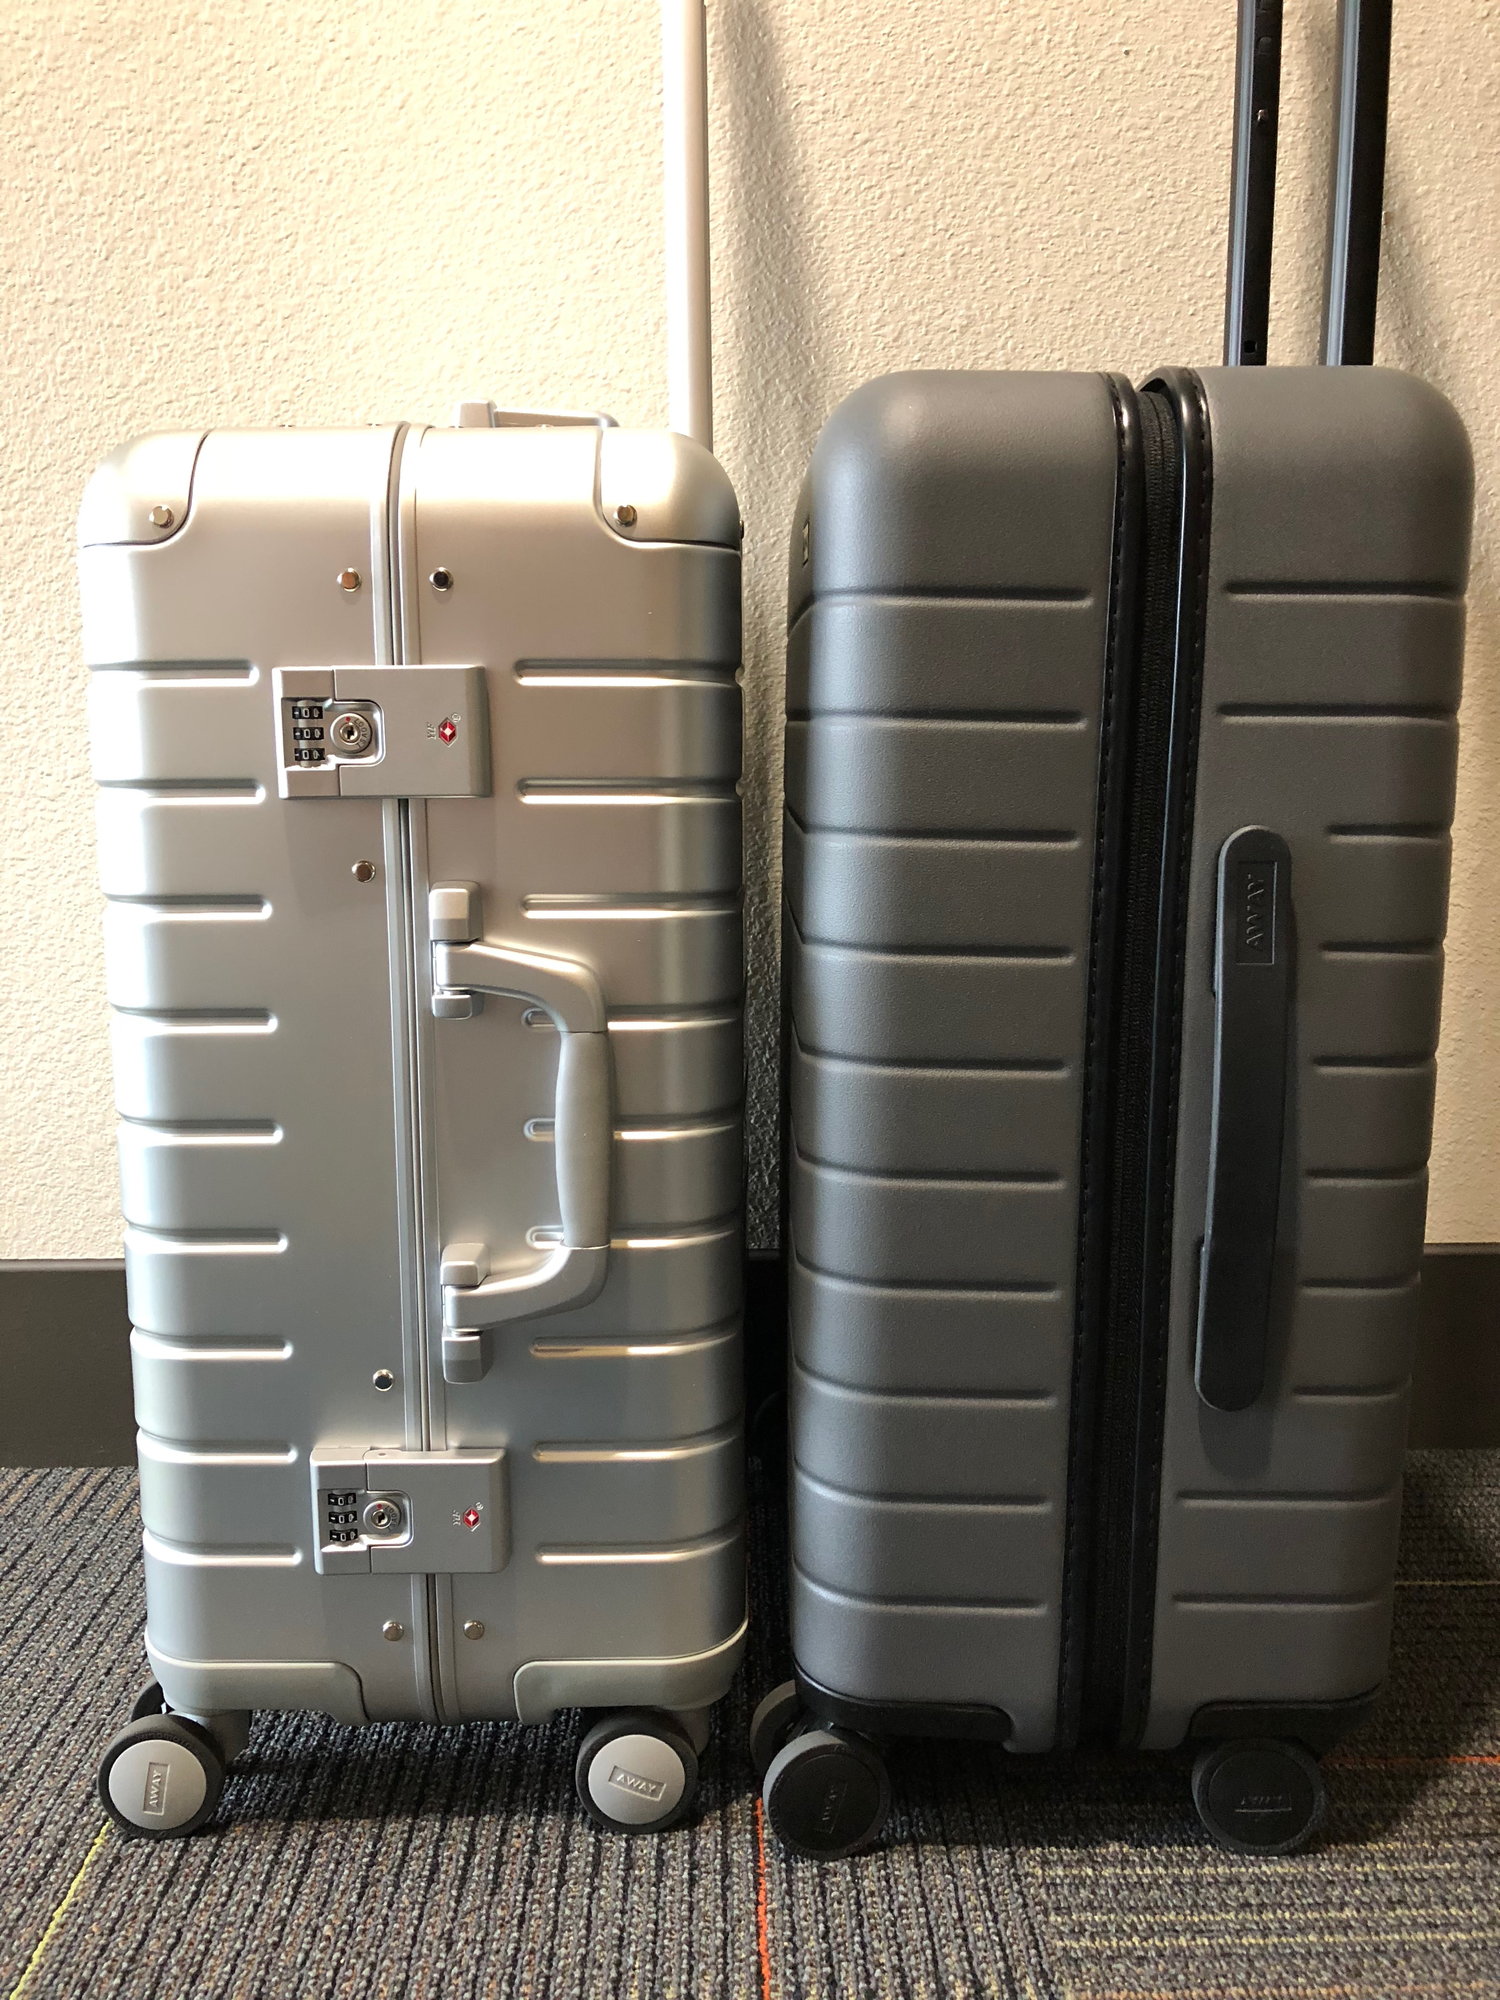 rimowa vs away luggage